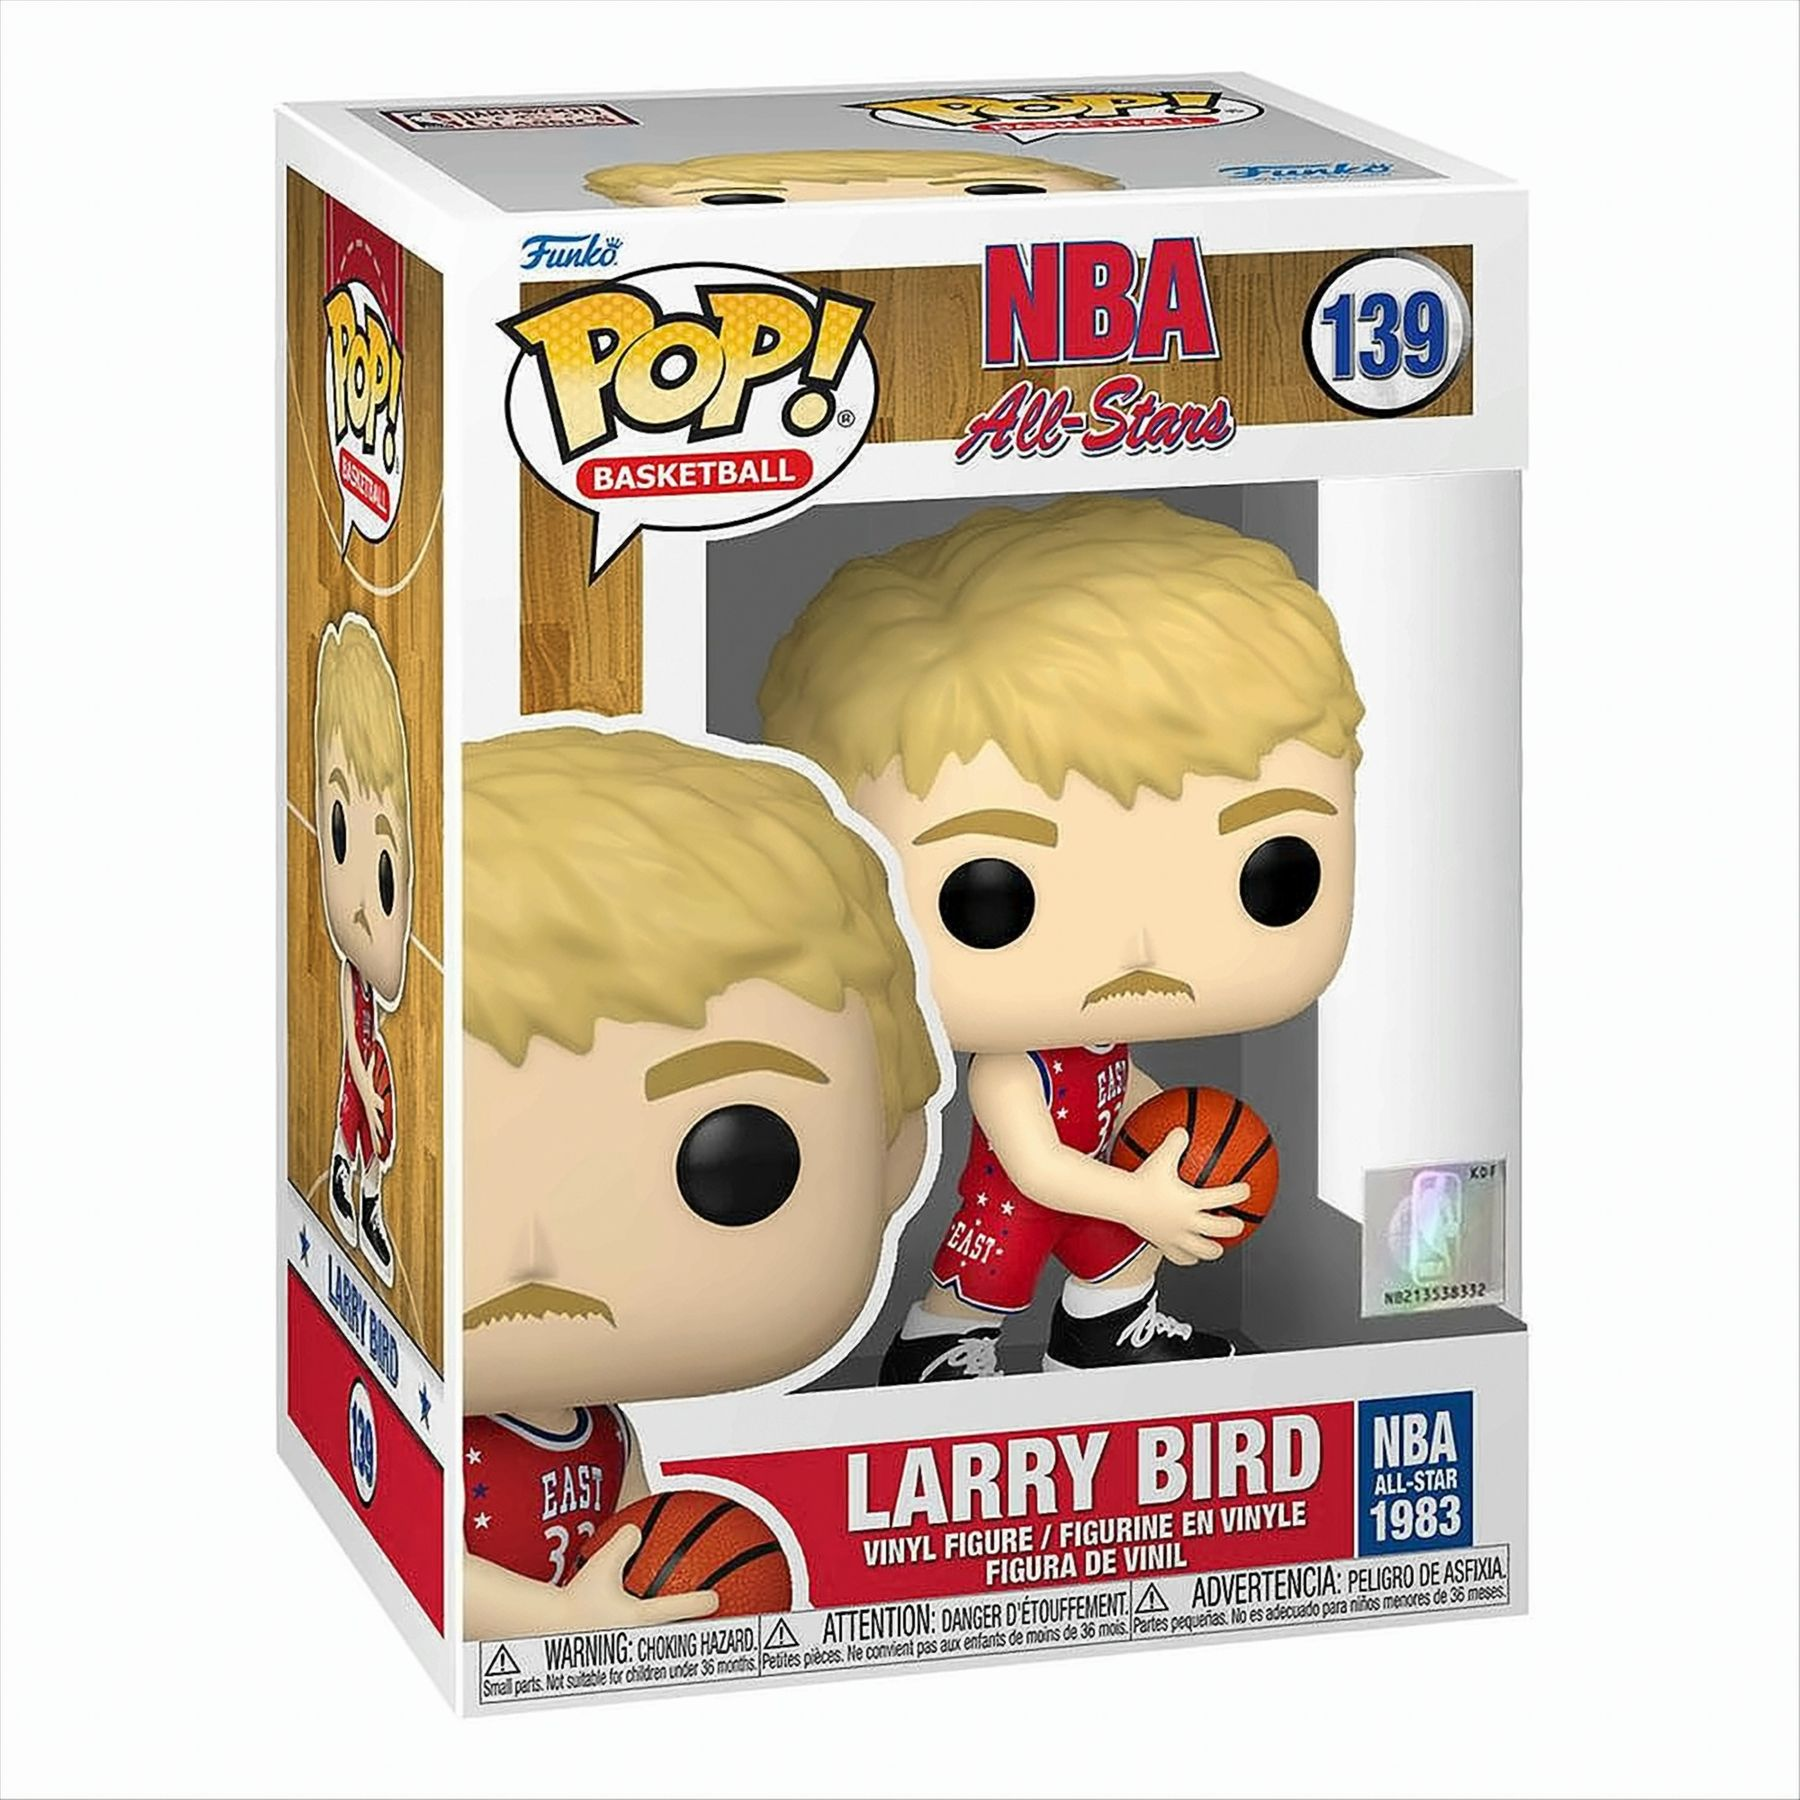 Larry Bird/All Stars NBA - - Legends - POP NBA